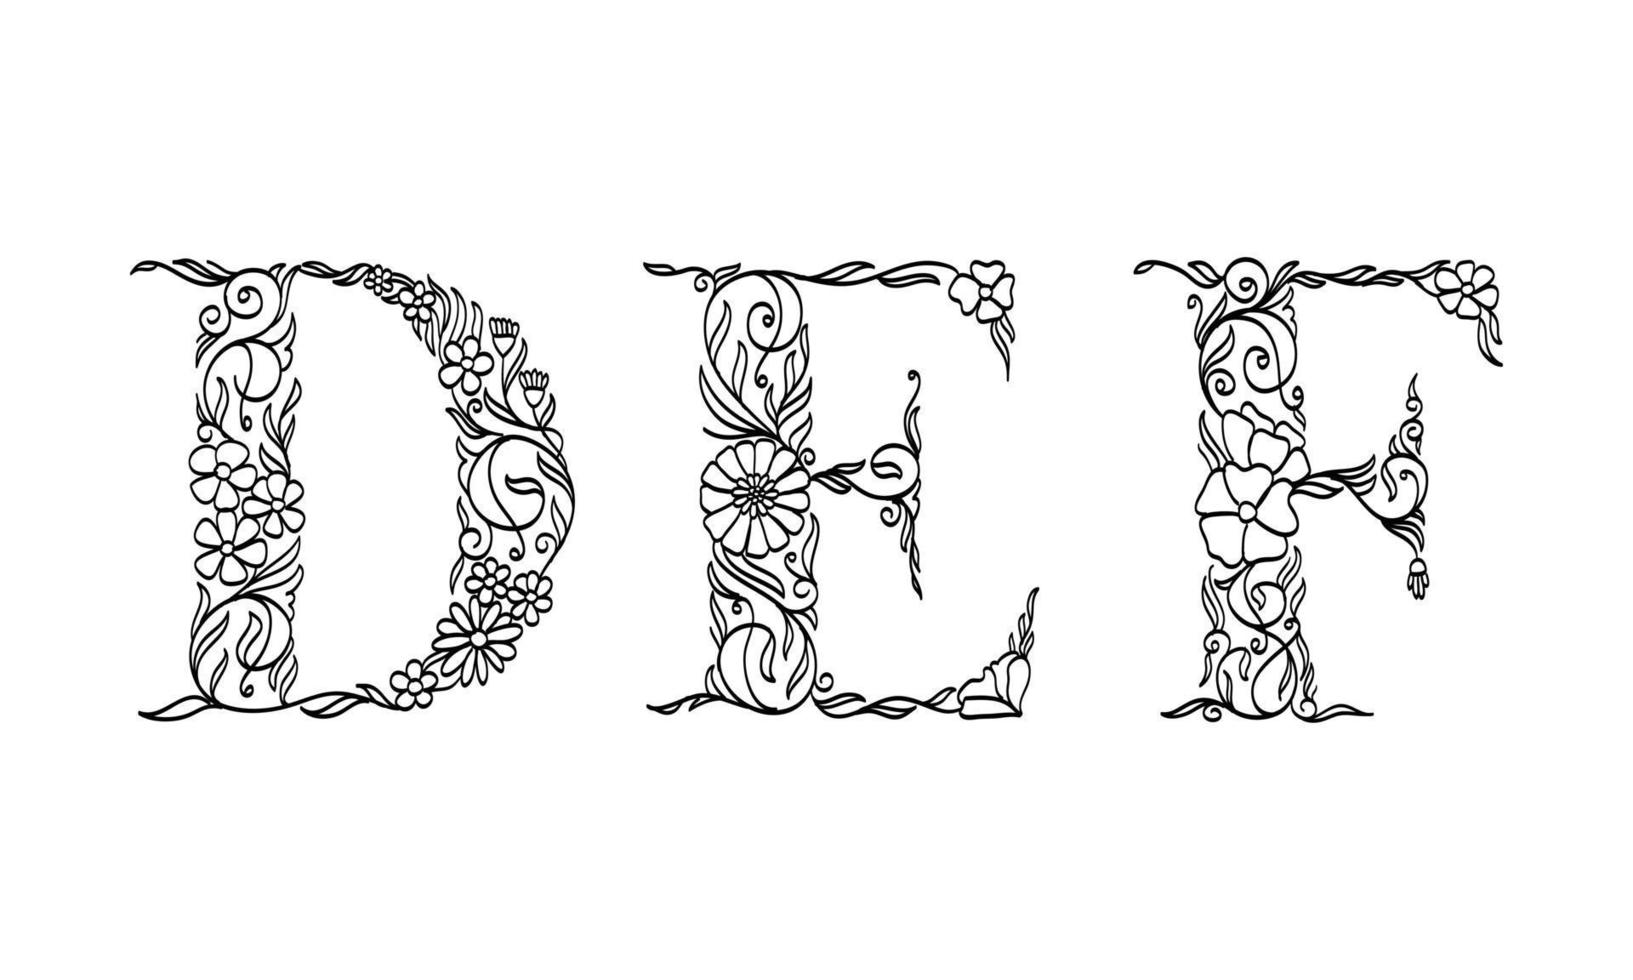 illustrazione floreale alfabeto d, e, f, carattere grafico vettoriale realizzato da piante di fiori e foglie linea arte creativa disegnata a mano per uno stile di natura astratta e naturale sembra in una decorazione dal design monocromatico unico